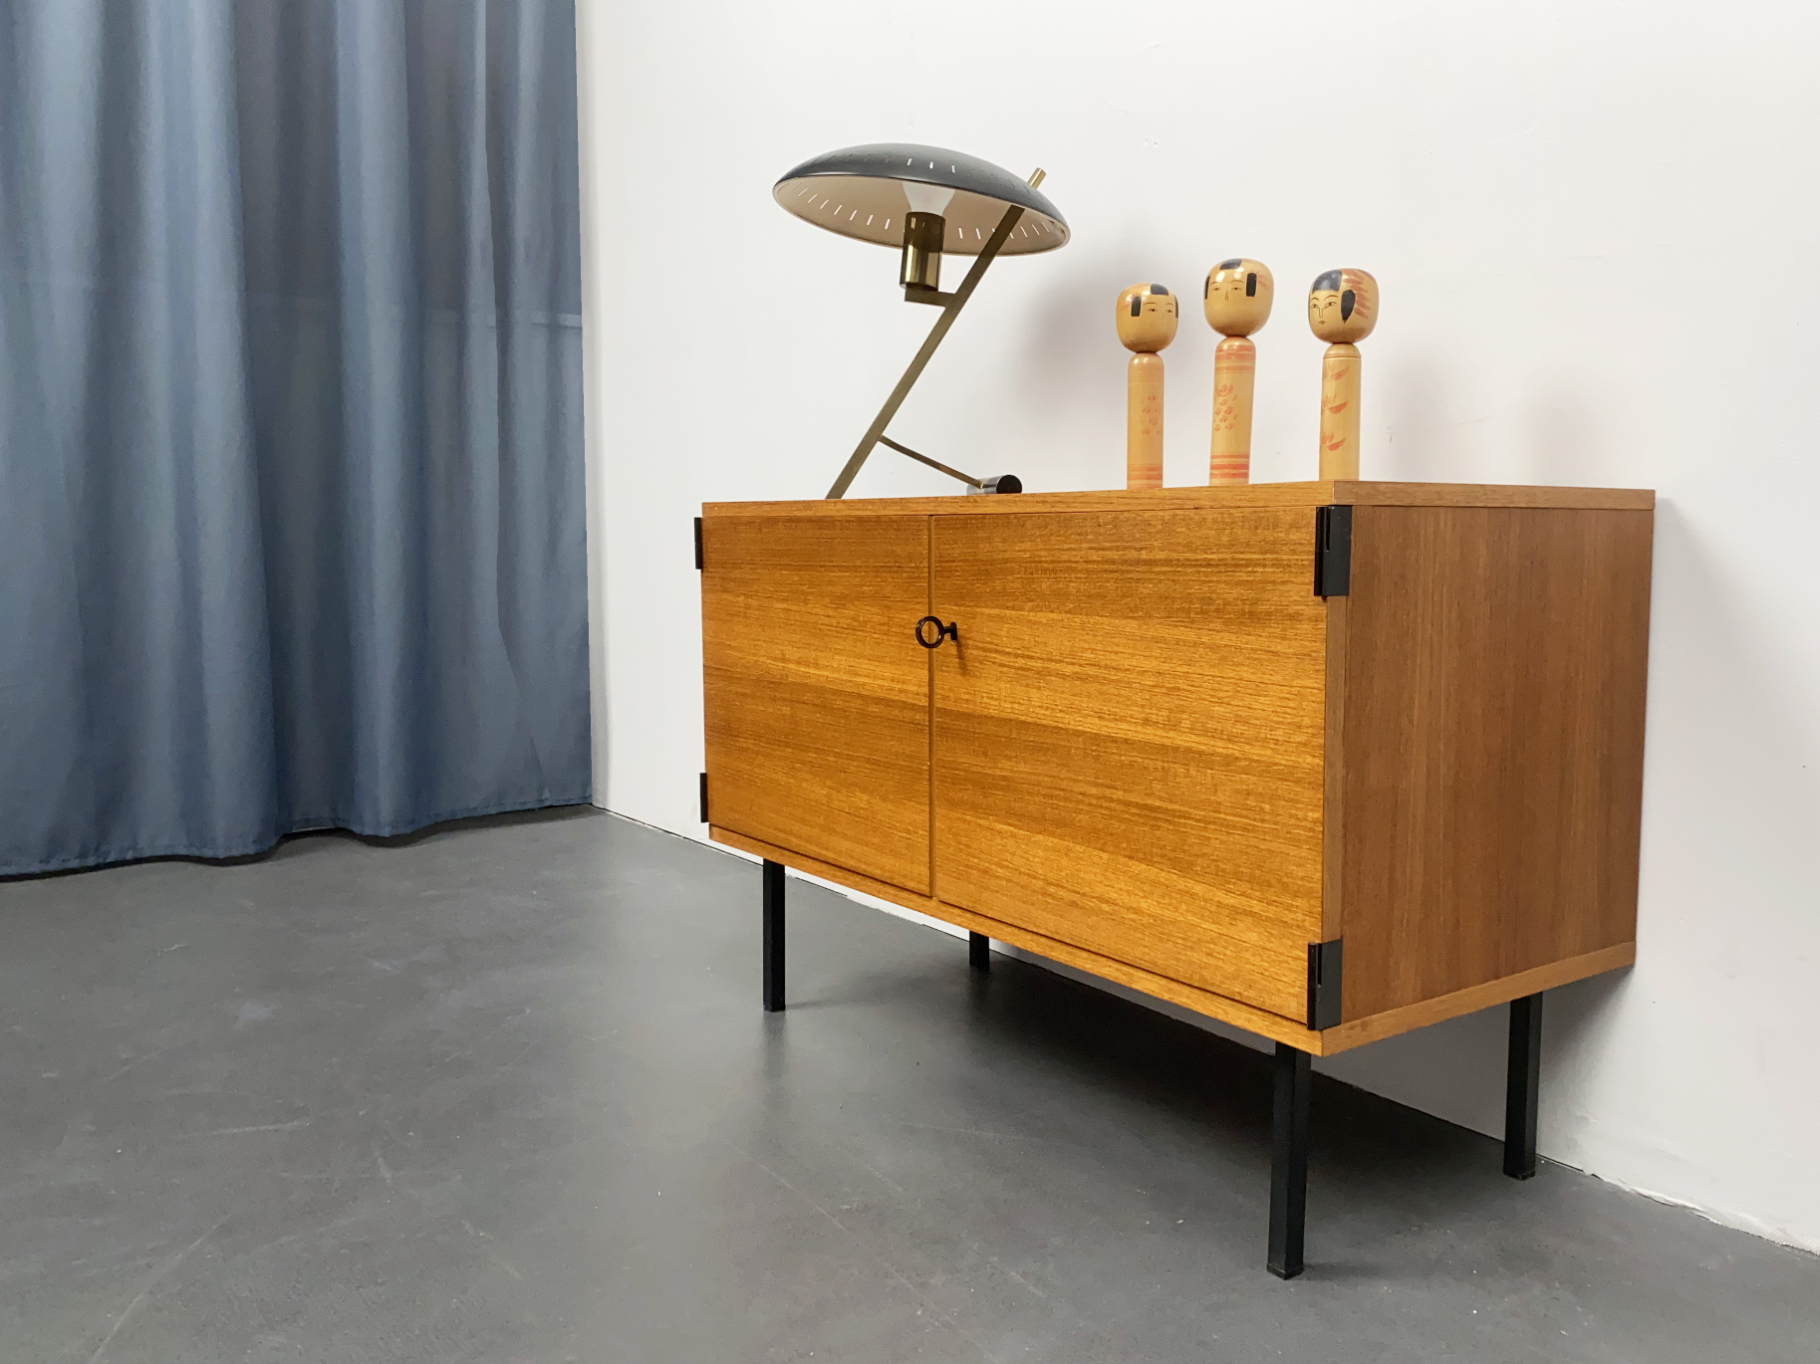 Sideboard, Teak Wood, by Günter Renkel for Rego Moebel, Model Series Twen, Germany, 1960s